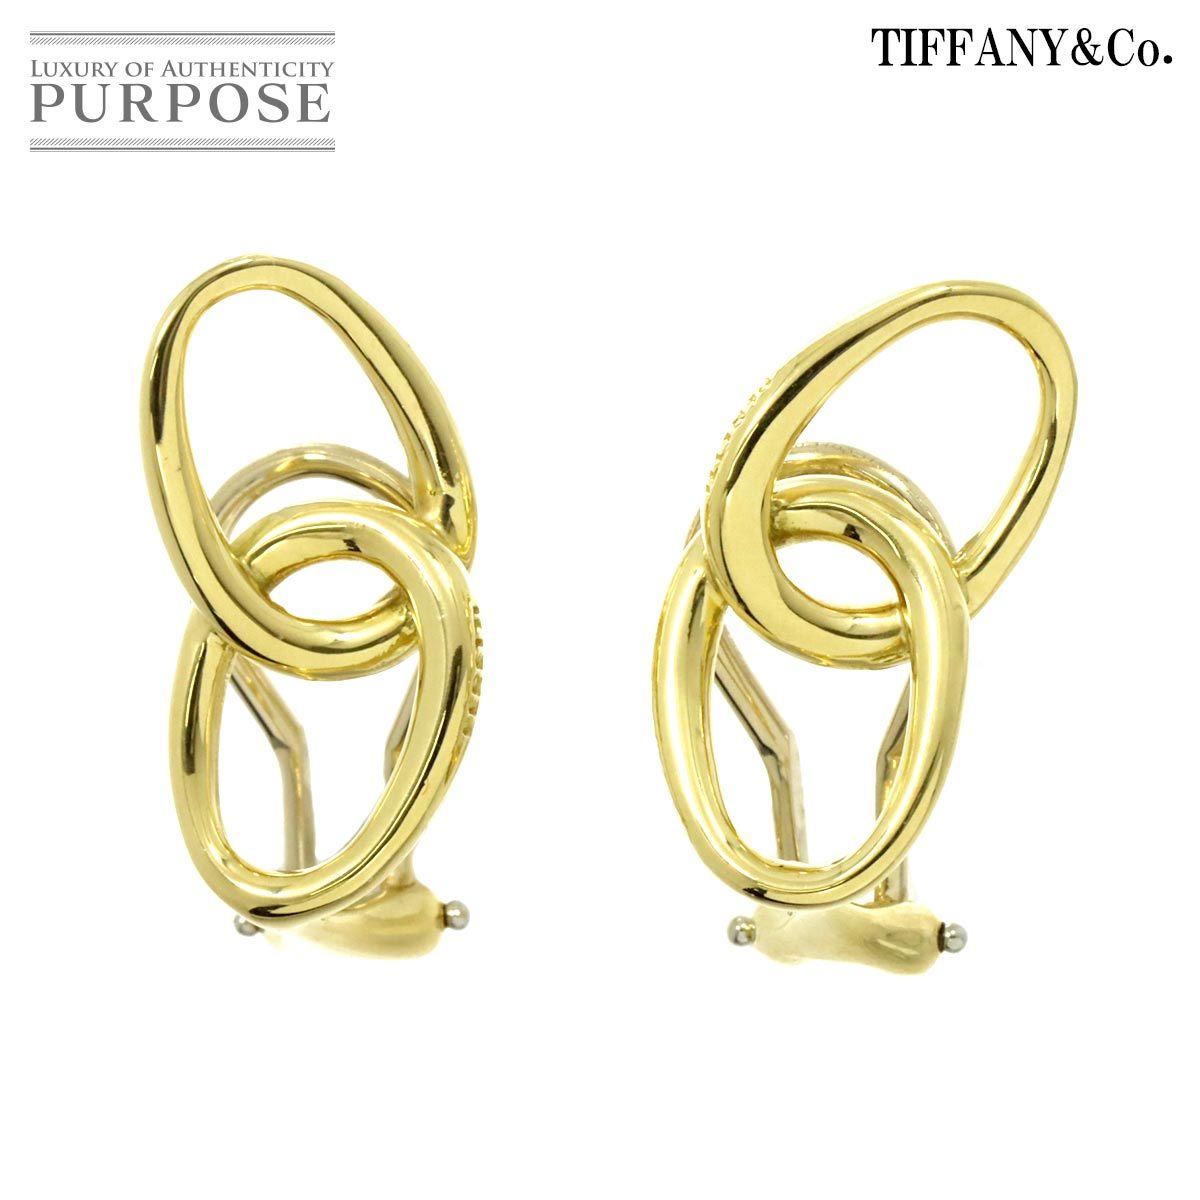  Tiffany TIFFANY&Co. Dub Leroux p earrings K18 YG yellow gold 750 Earrings Clip-on 90214911